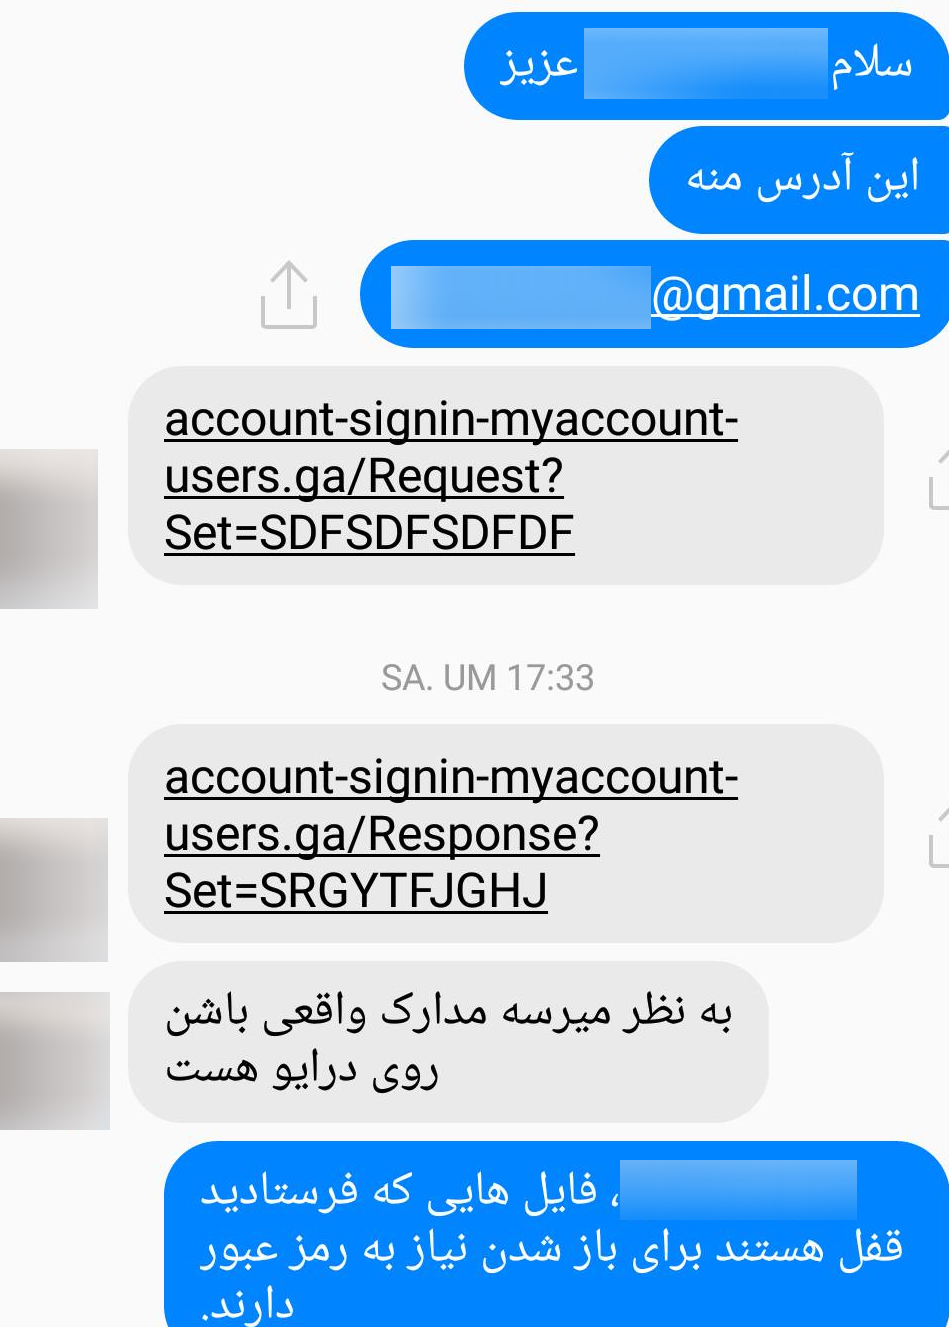 تصویر پیام ارسالی در فیس بوک که توسط قربانی اول که هک شده بود برای یکی از خبرنگاران ارسال شده است